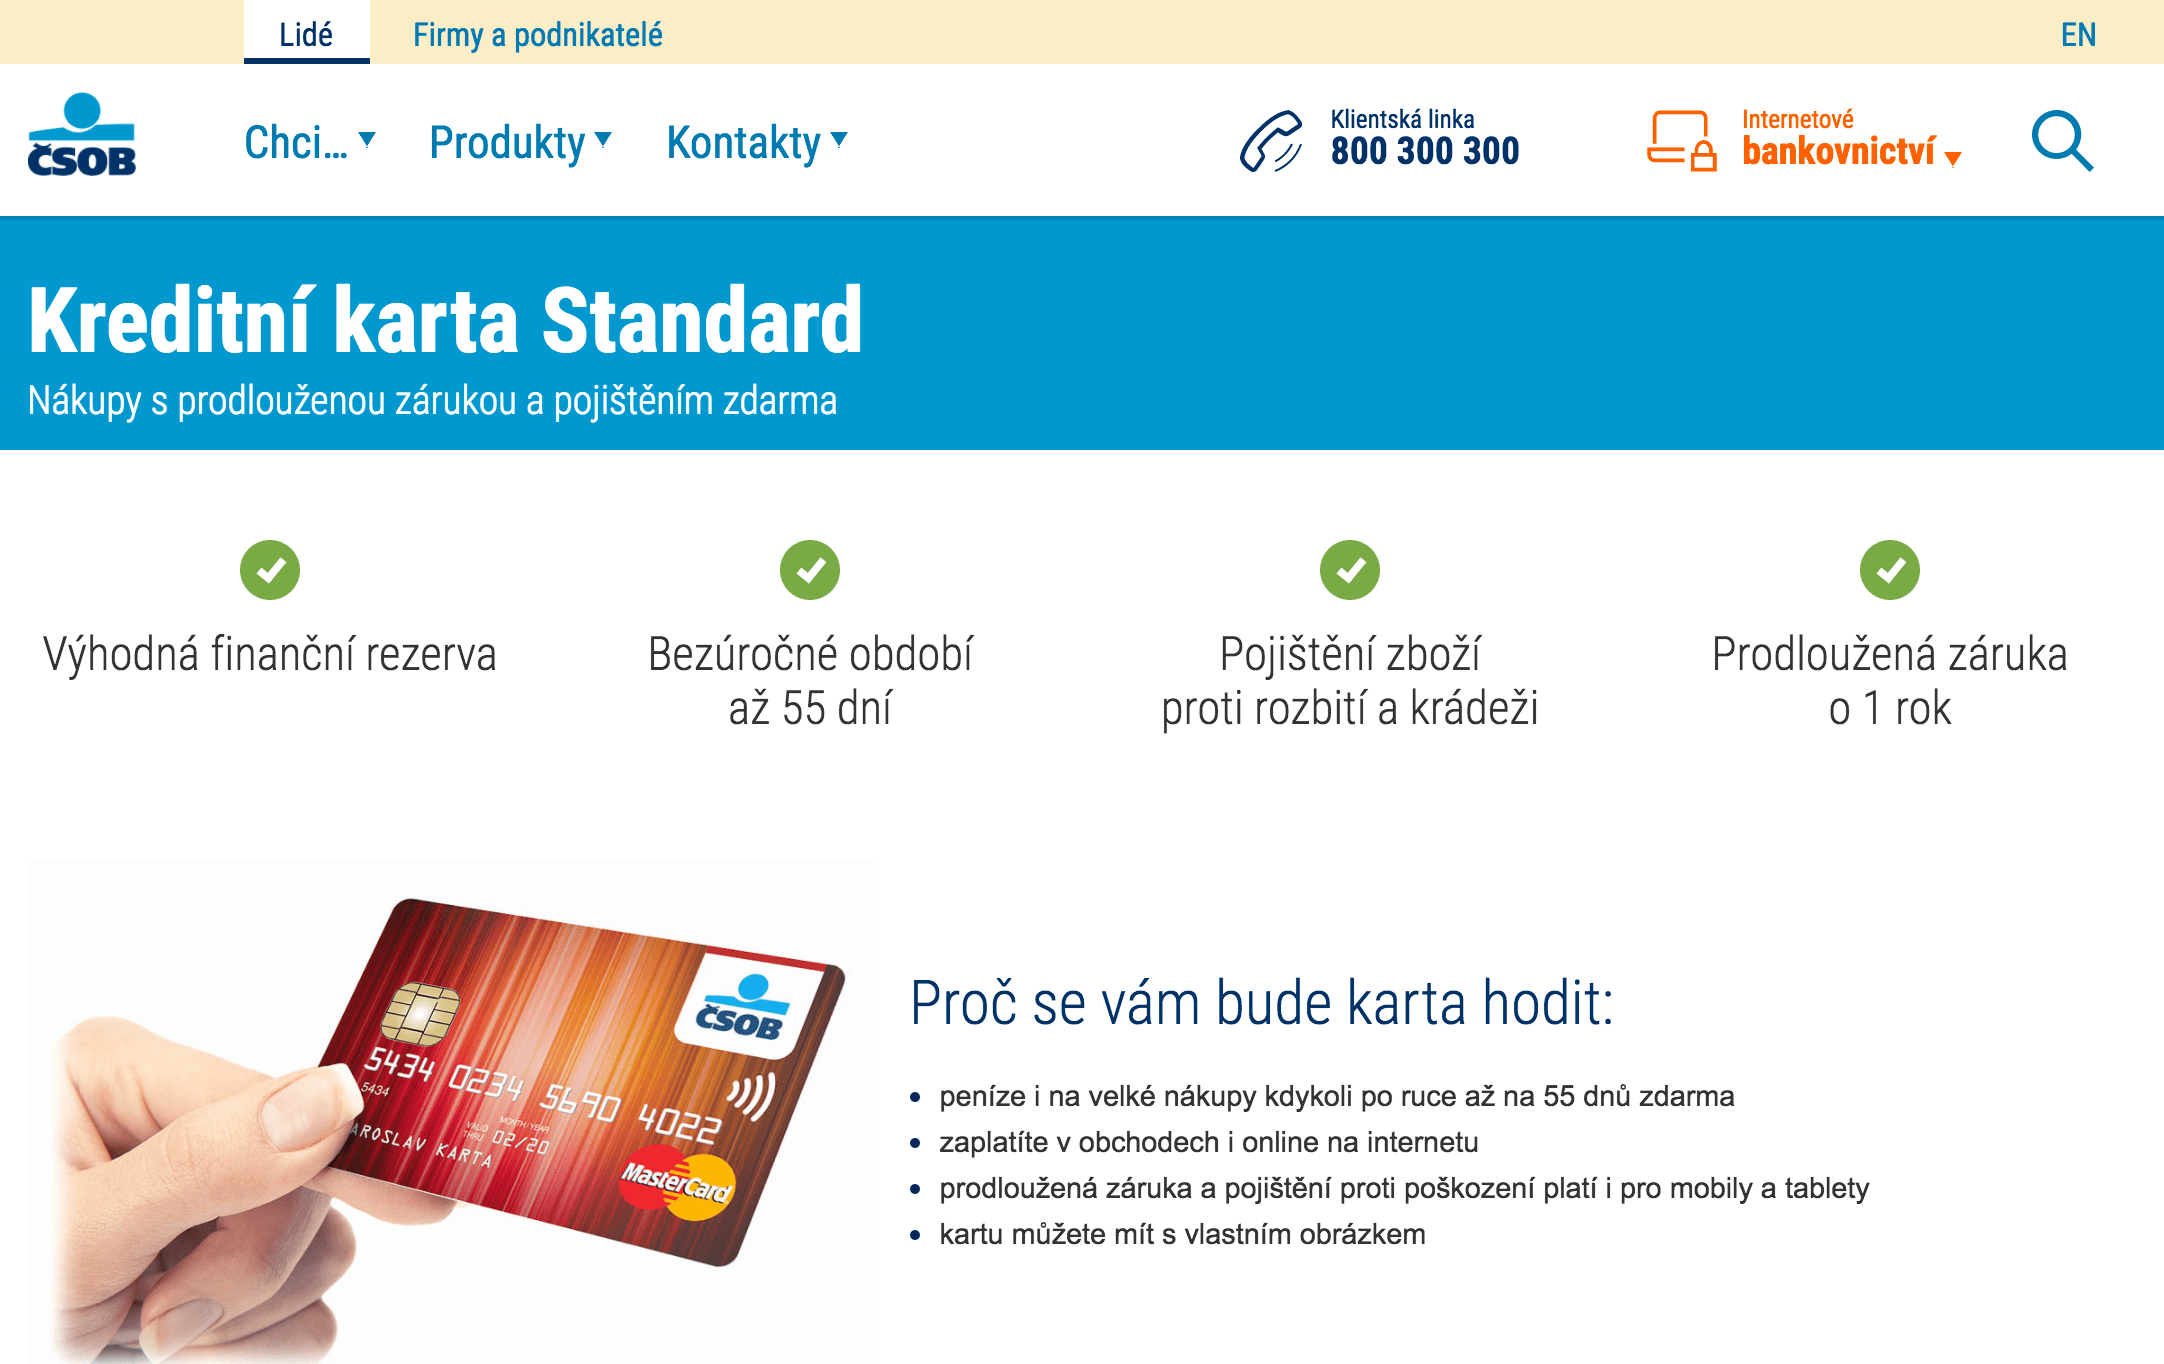 Kreditní karta Standard od ČSOB zkušenosti a diskuze